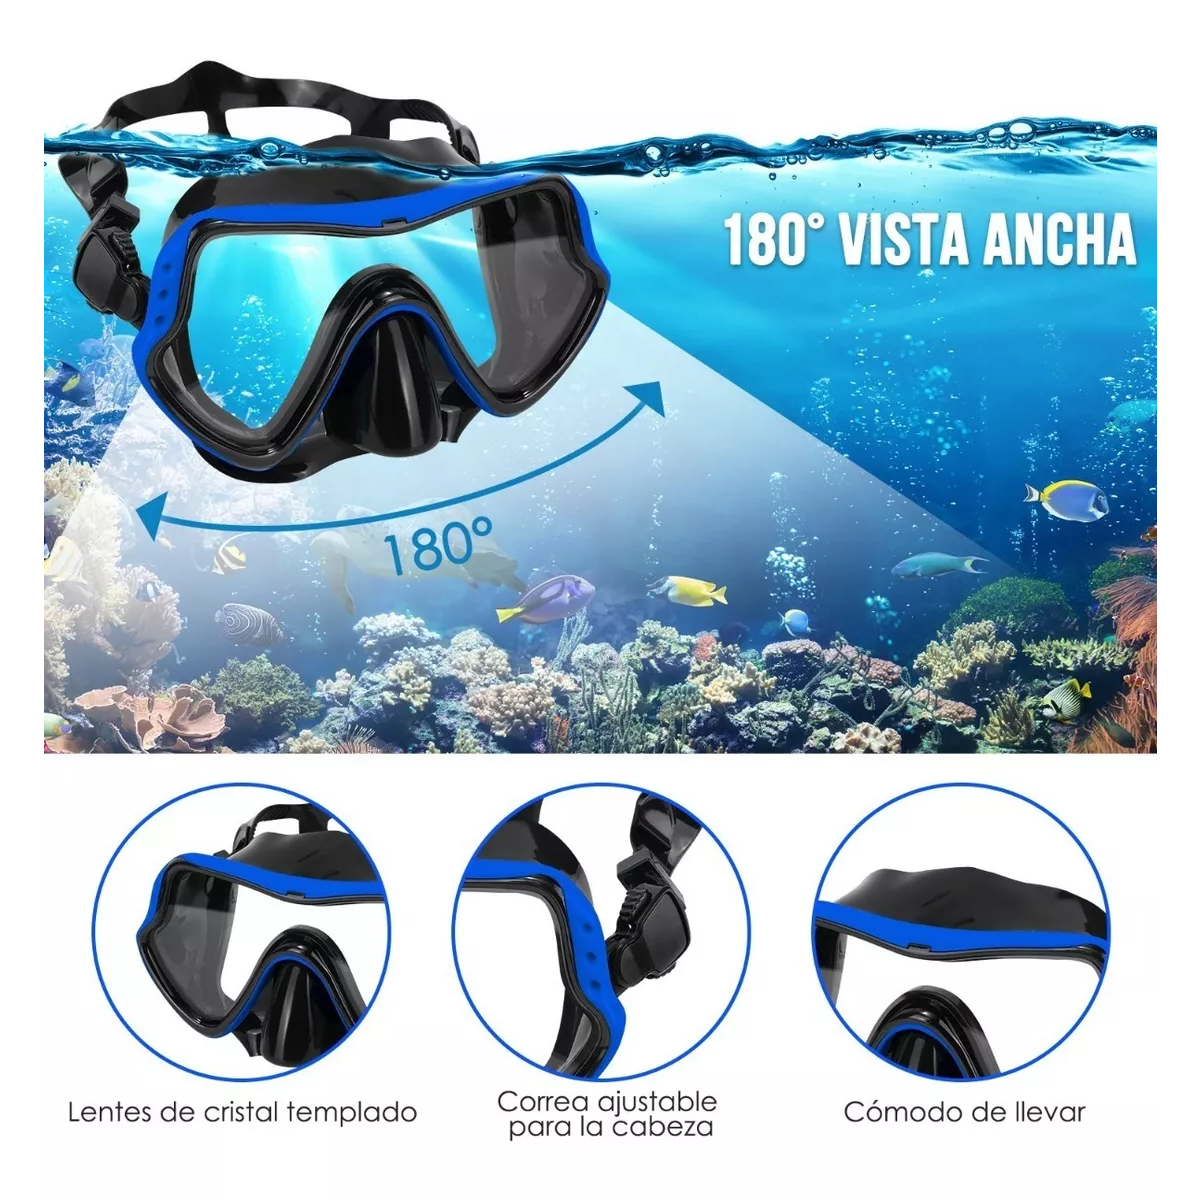 SEAC Aquatech gafas de natación de silicona